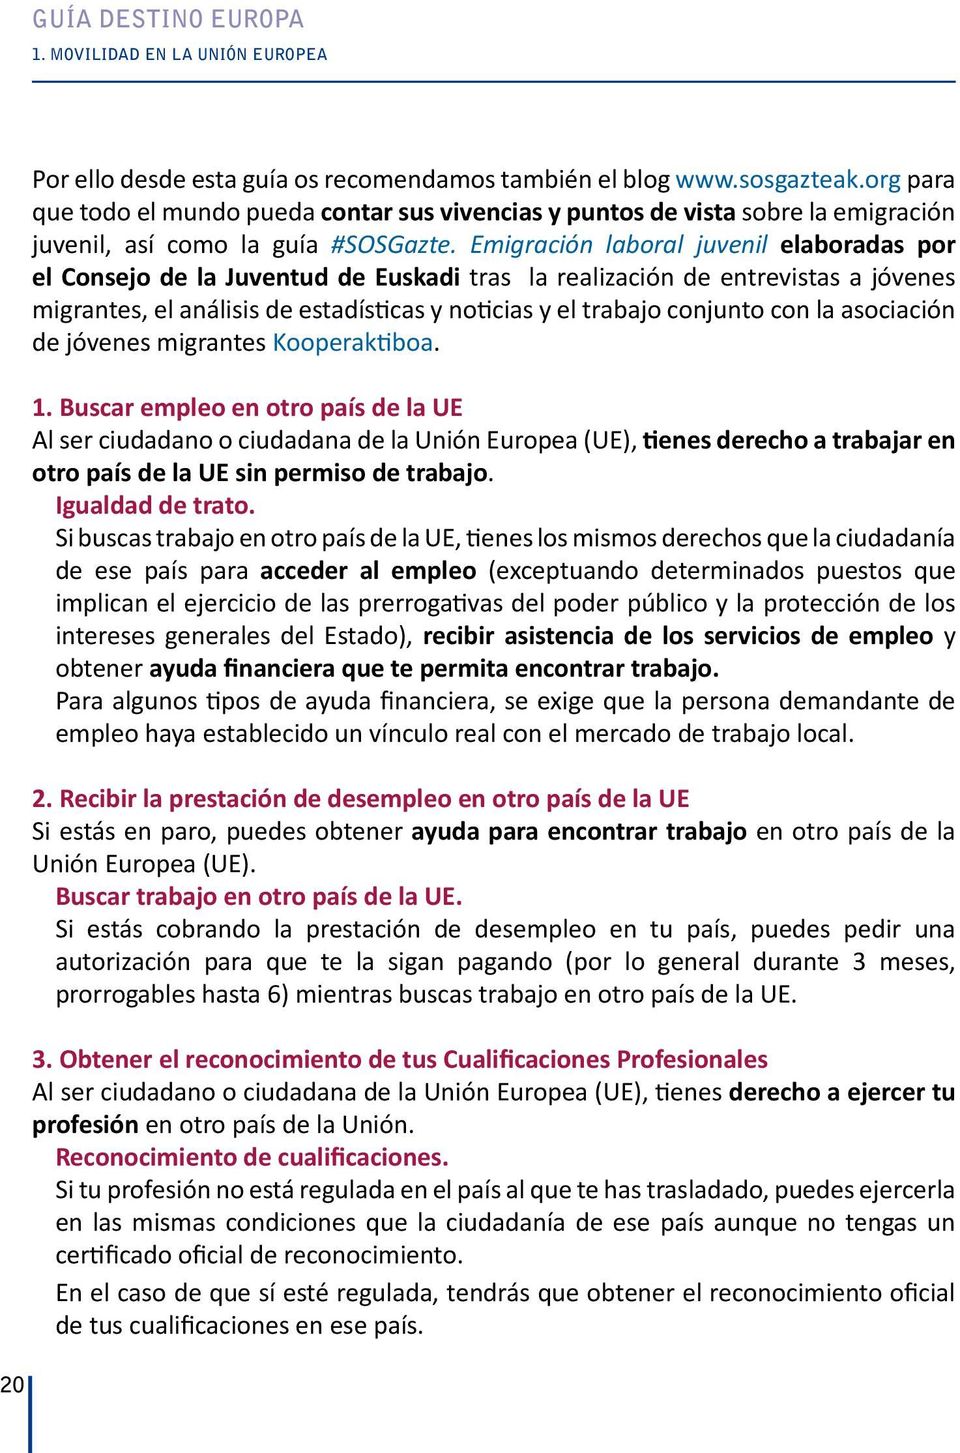 Emigración laboral juvenil elaboradas por el Consejo de la Juventud de Euskadi tras la realización de entrevistas a jóvenes migrantes, el análisis de estadísticas y noticias y el trabajo conjunto con